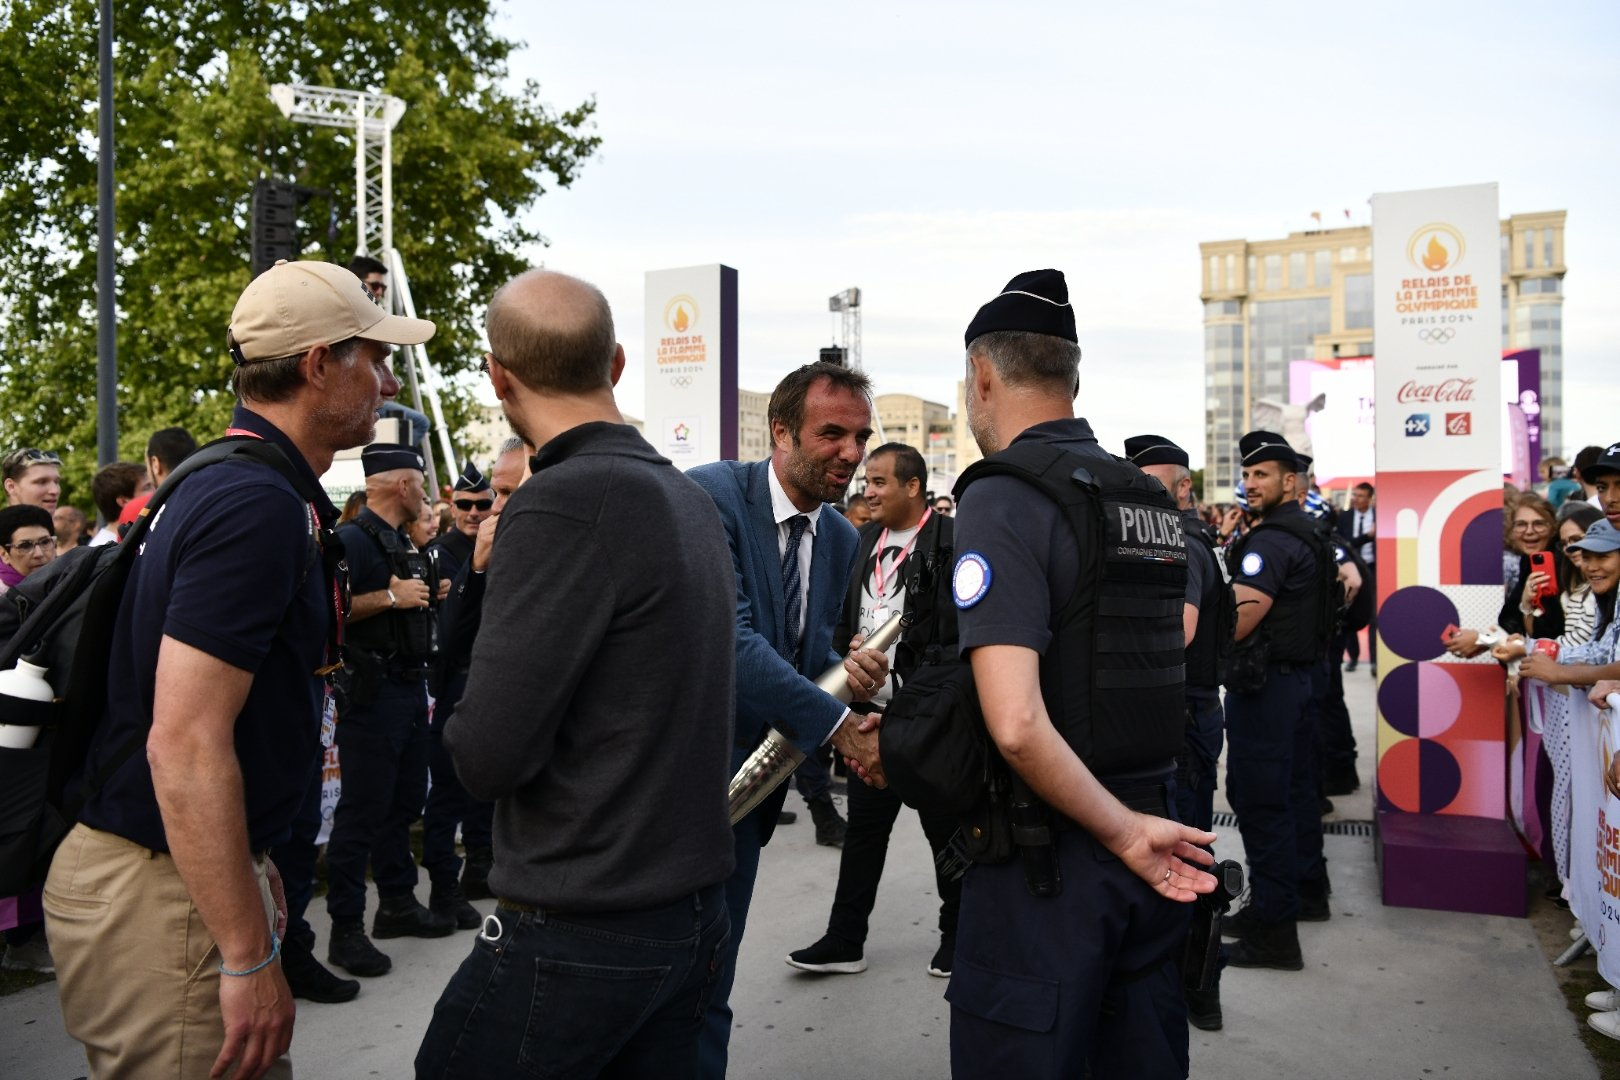 Le maire de Montpellier remercie les forces de l'ordre. Plus de 2 000 policiers, gendarmes et pompiers étaient mobilisés pour l'évènement 